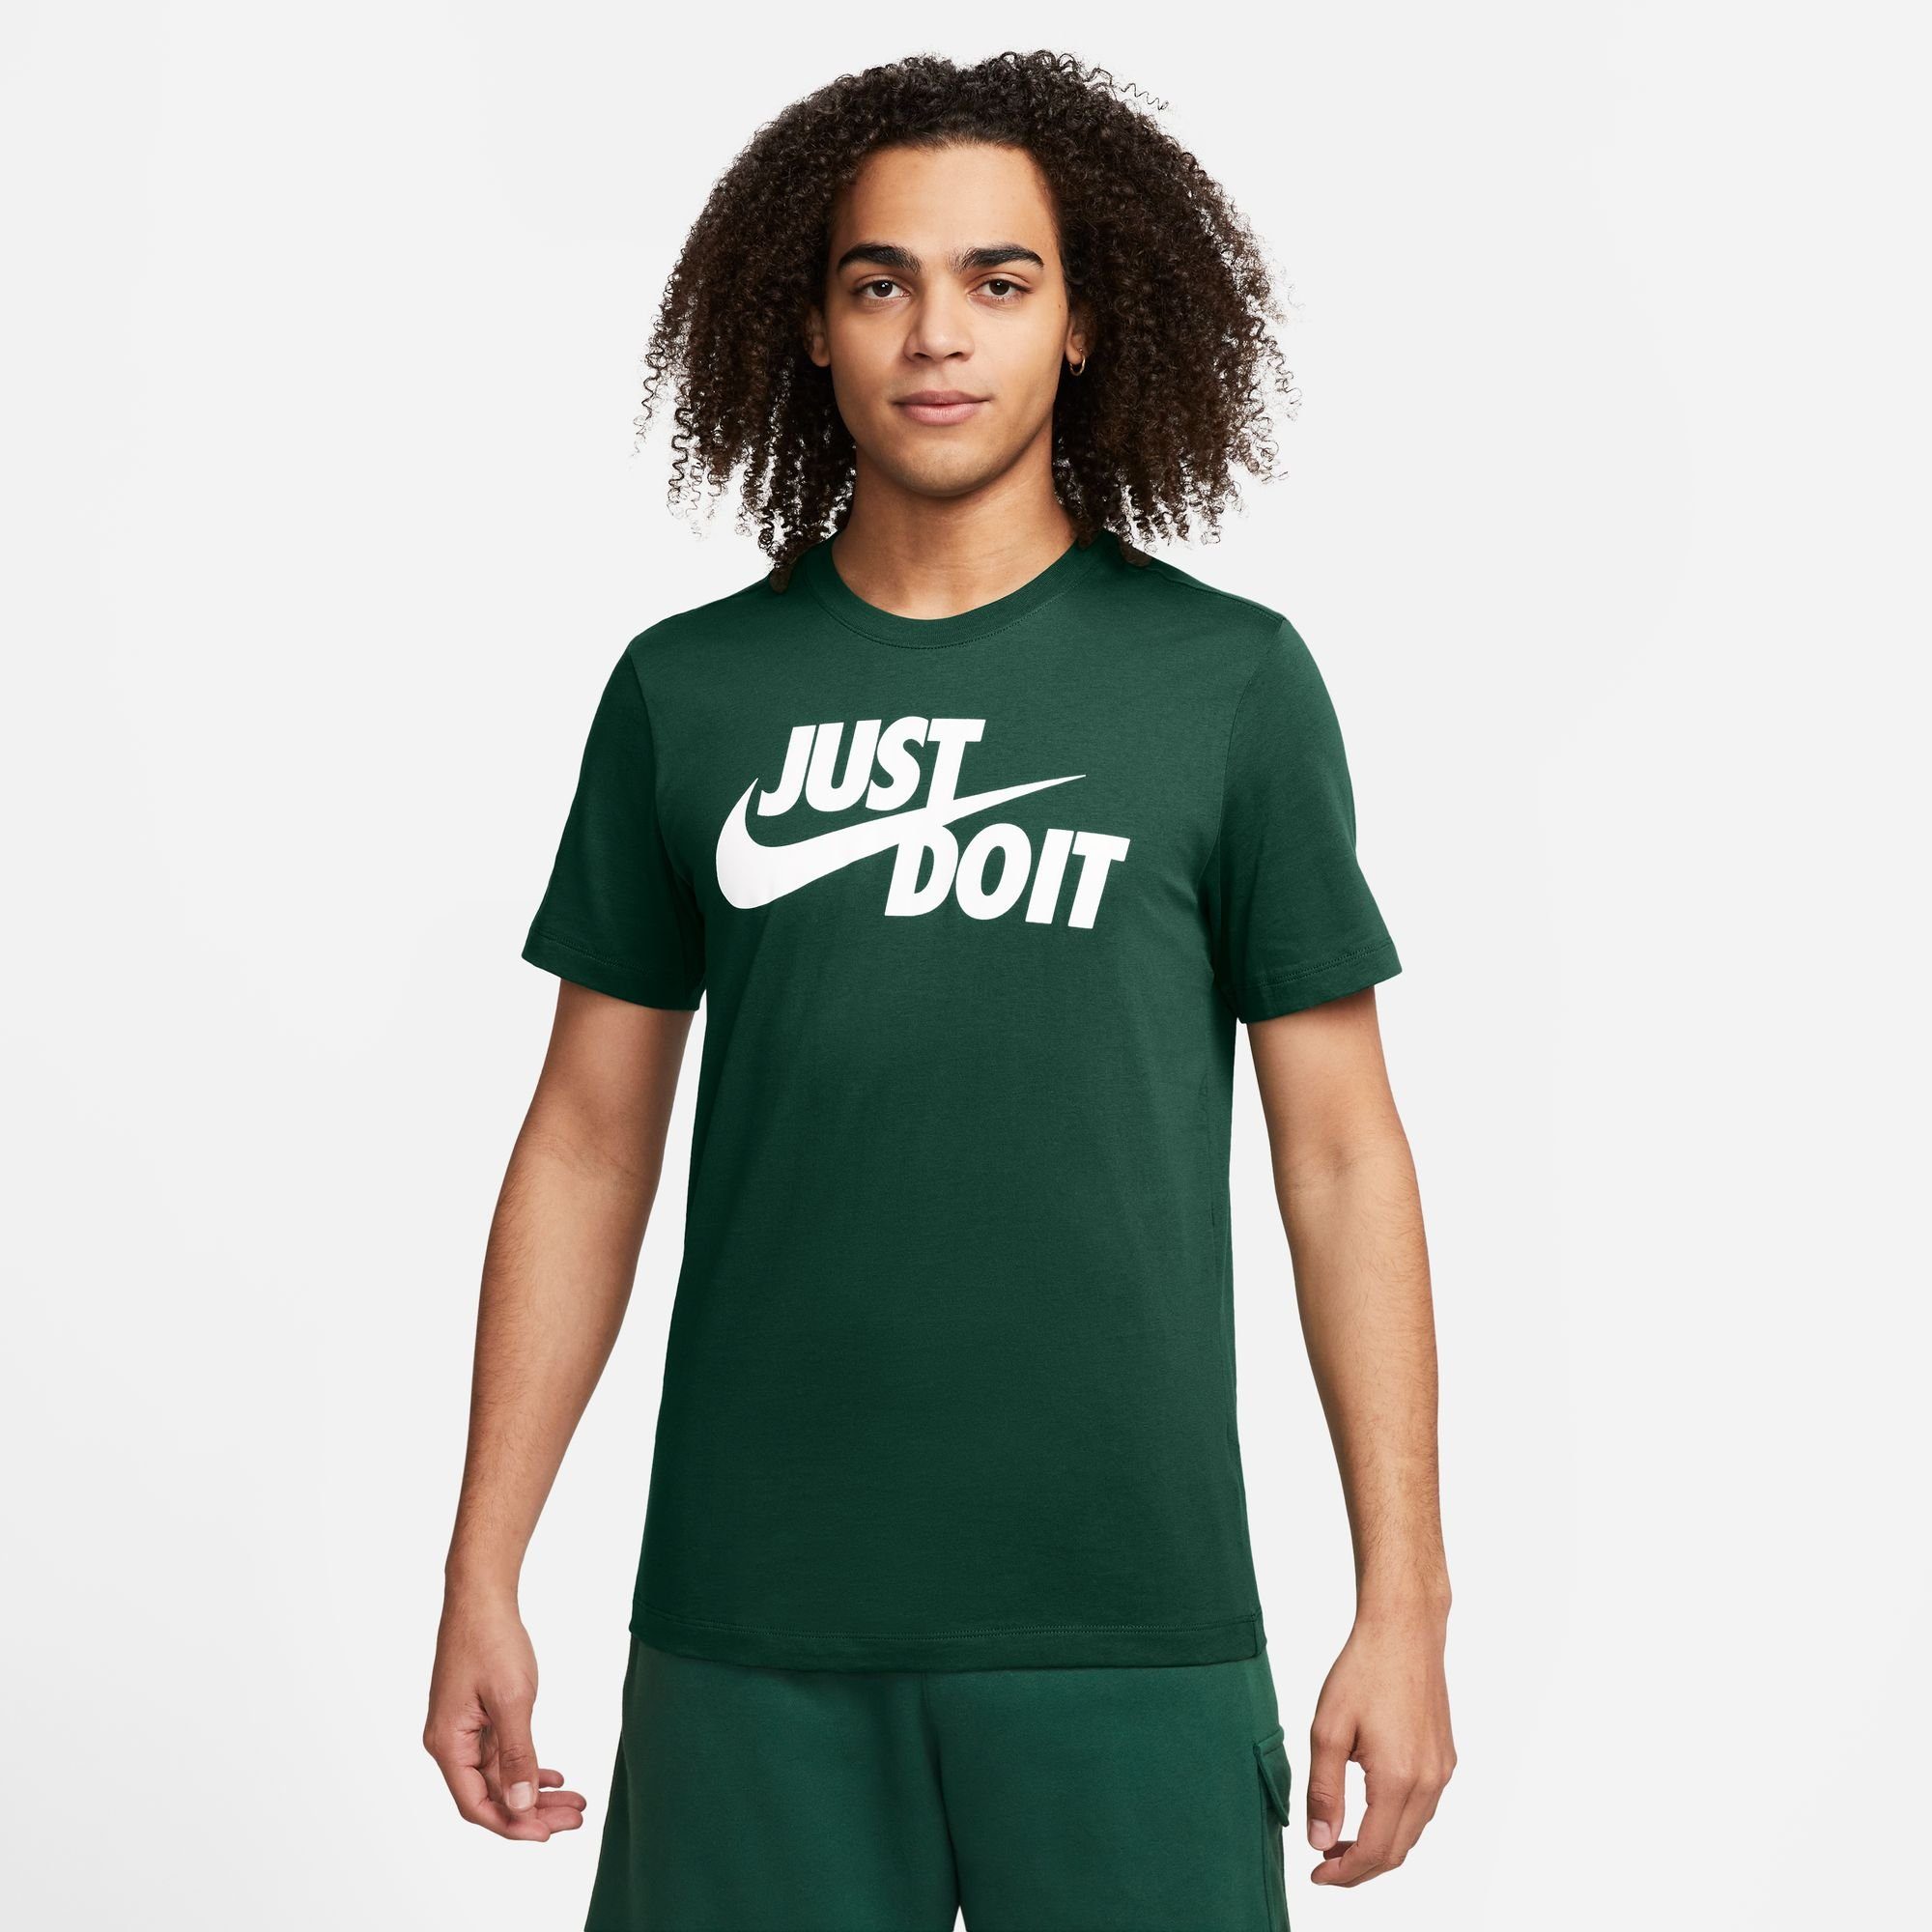 Nike Sportswear Just Do It T-shirt T-shirts Kleding fir maat: XL beschikbare maaten:S M L XL